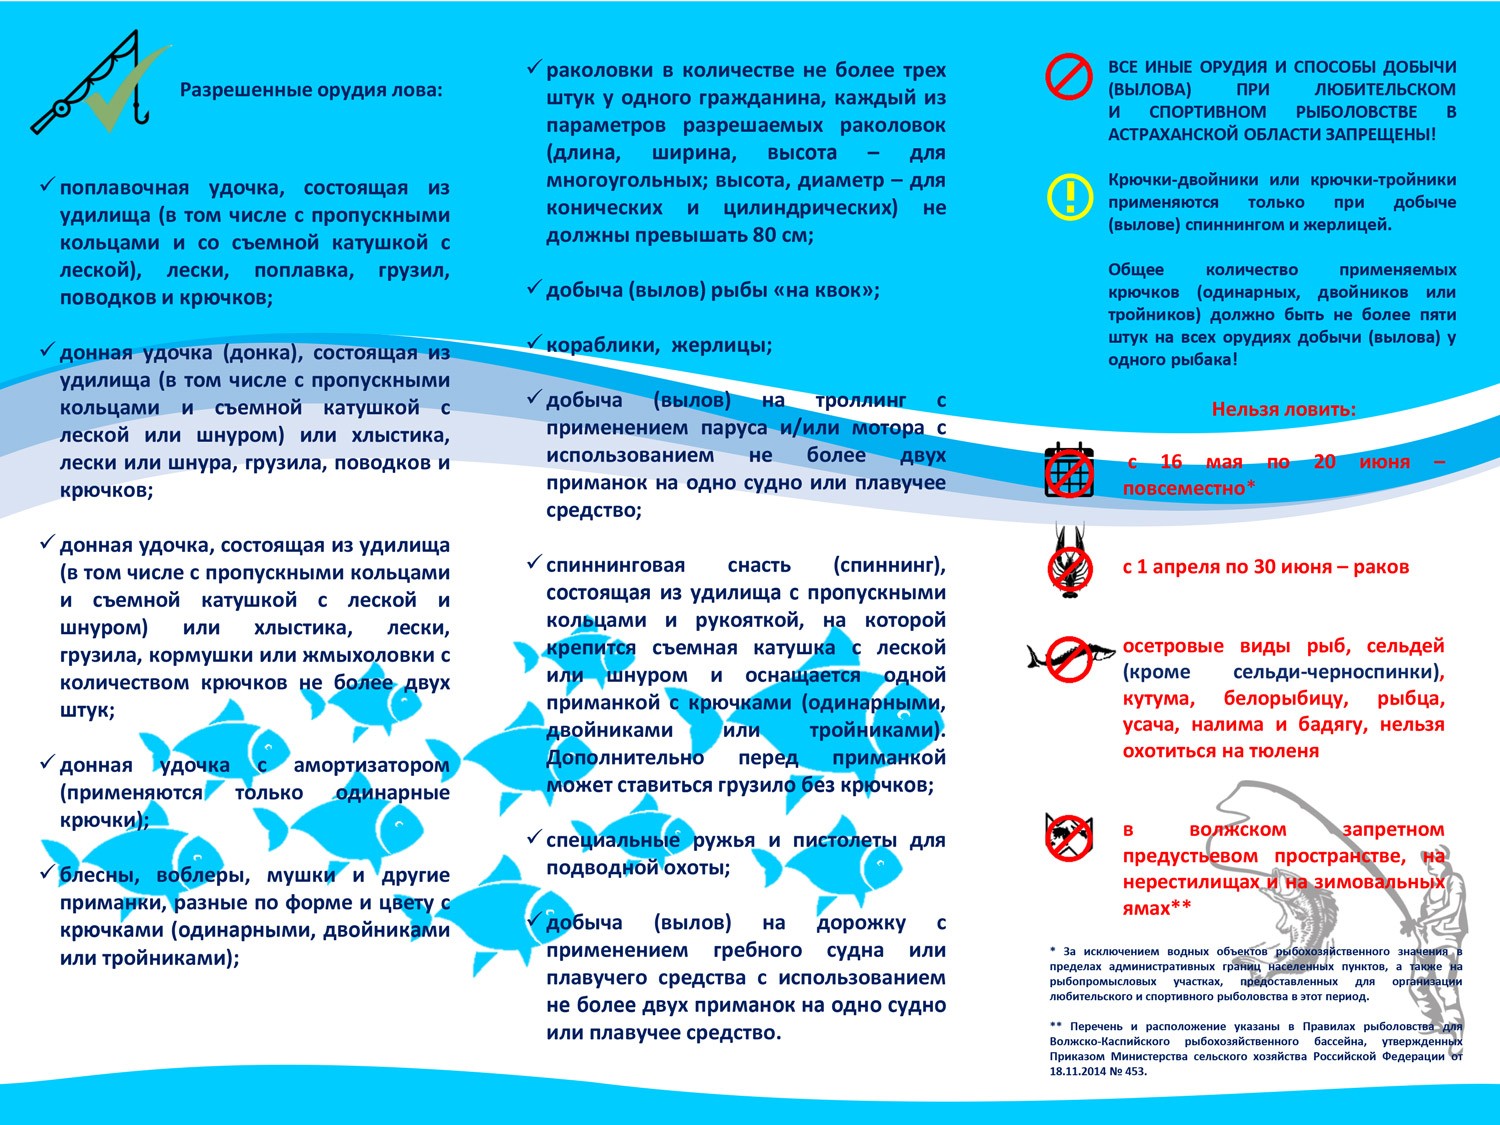 Нерестовый запрет 2024 году в саратовской области. Правила рыбной ловли. Памятка для рыболовов любителей. Правила Любительской рыбной ловли. Памятка для рыбаков любителей в Астраханской области.